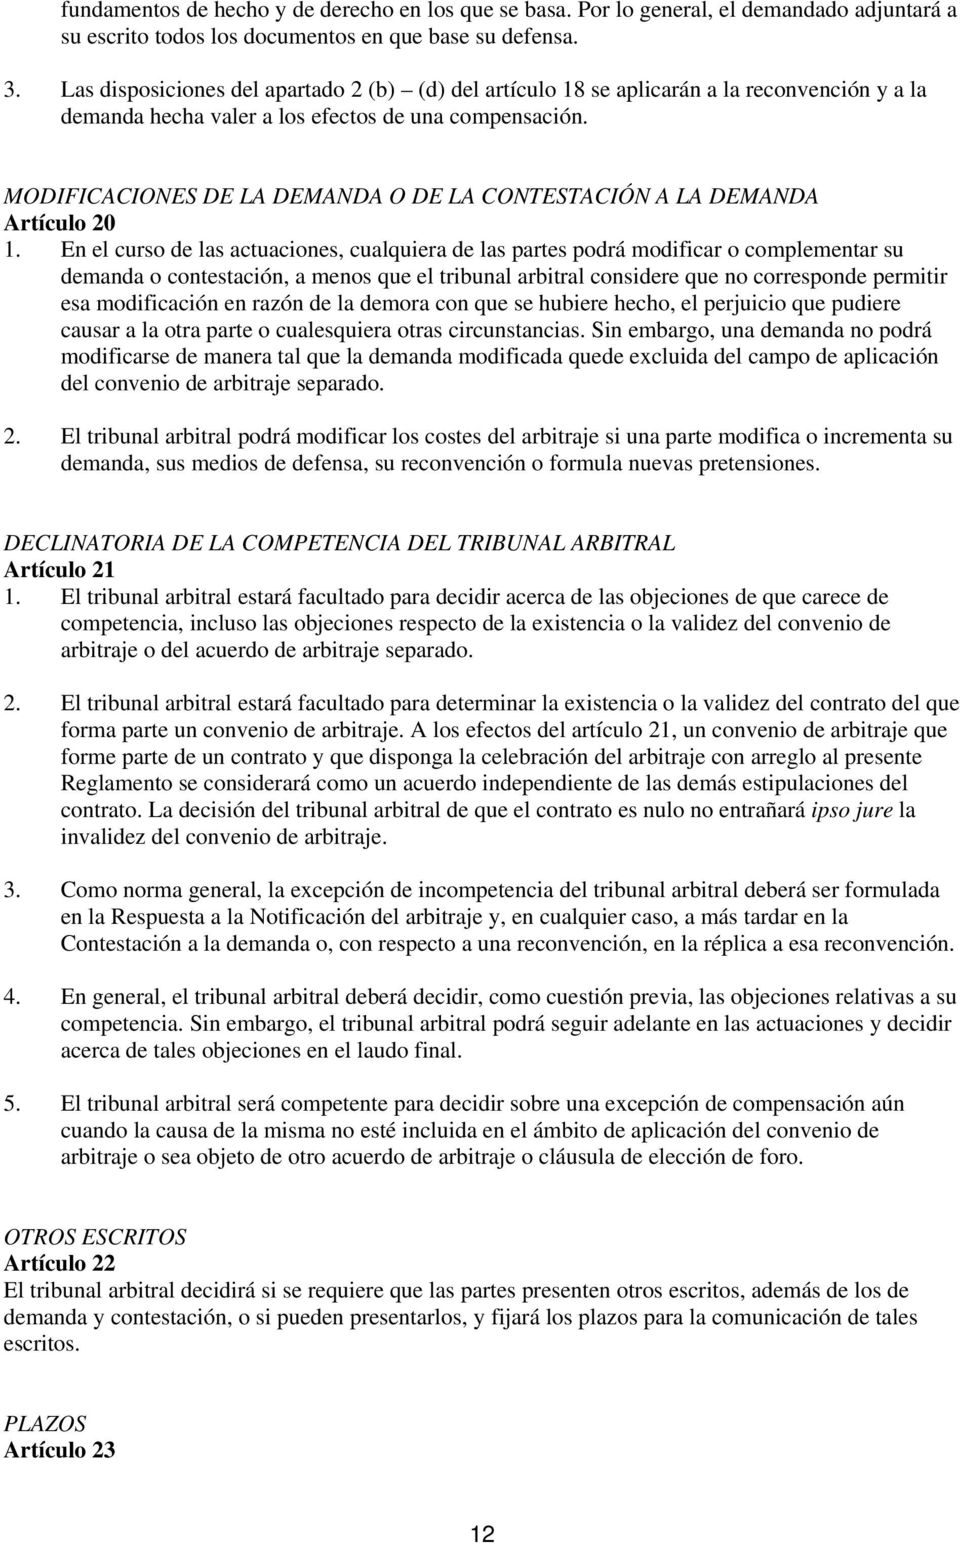 MODIFICACIONES DE LA DEMANDA O DE LA CONTESTACIÓN A LA DEMANDA Artículo 20 1.